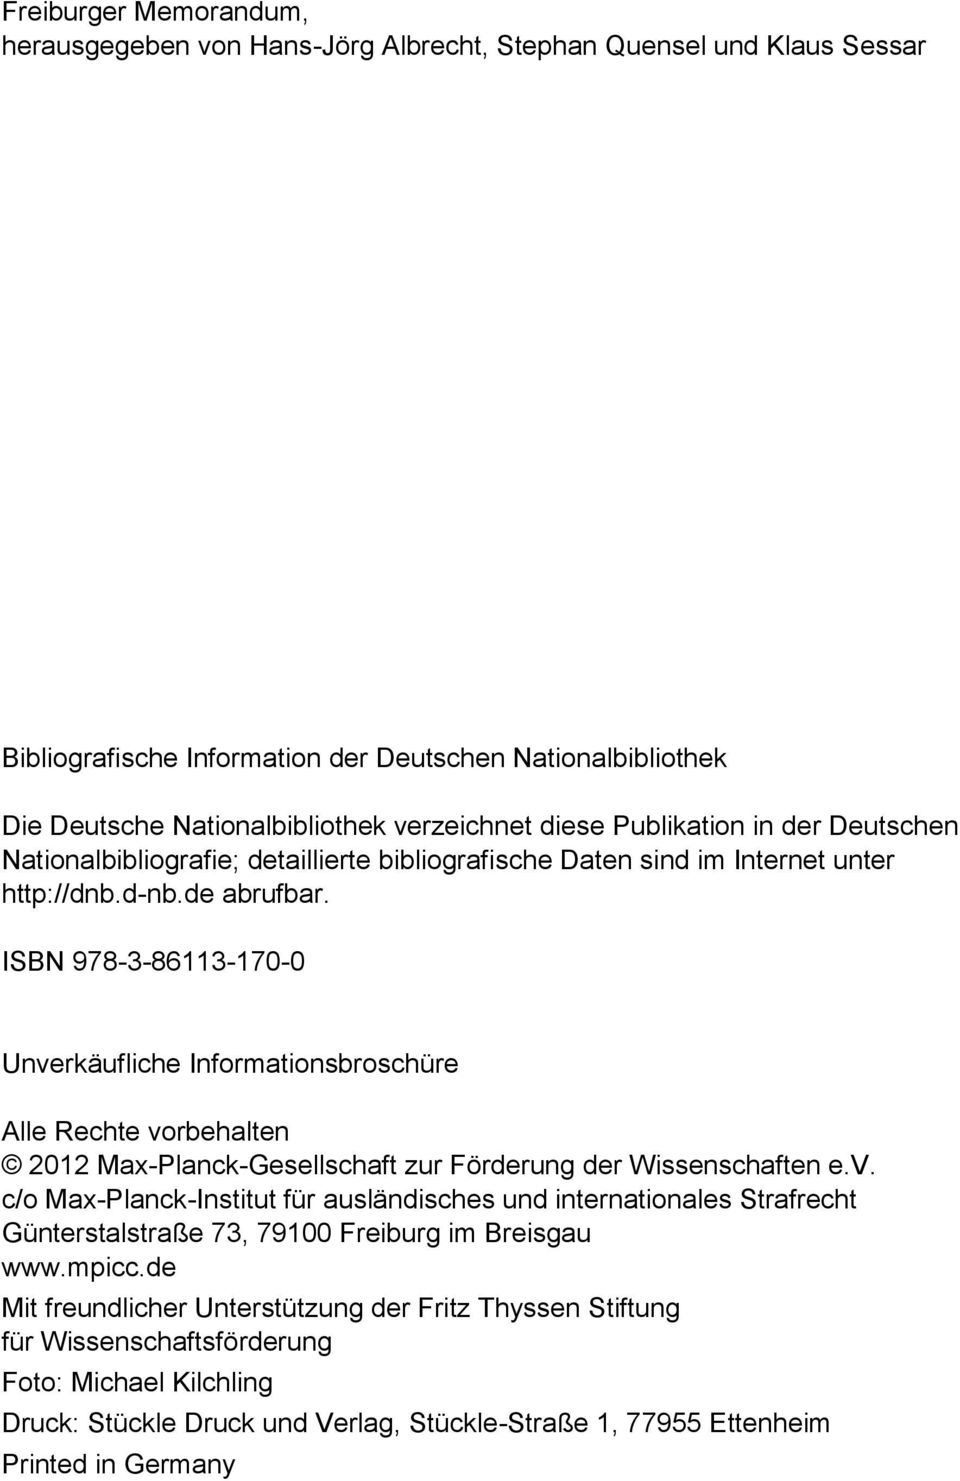 ISBN 978-3-86113-170-0 Unverkäufliche Informationsbroschüre Alle Rechte vorbehalten 2012 Max-Planck-Gesellschaft zur Förderung der Wissenschaften e.v. c/o Max-Planck-Institut für ausländisches und internationales Strafrecht Günterstalstraße 73, 79100 Freiburg im Breisgau www.